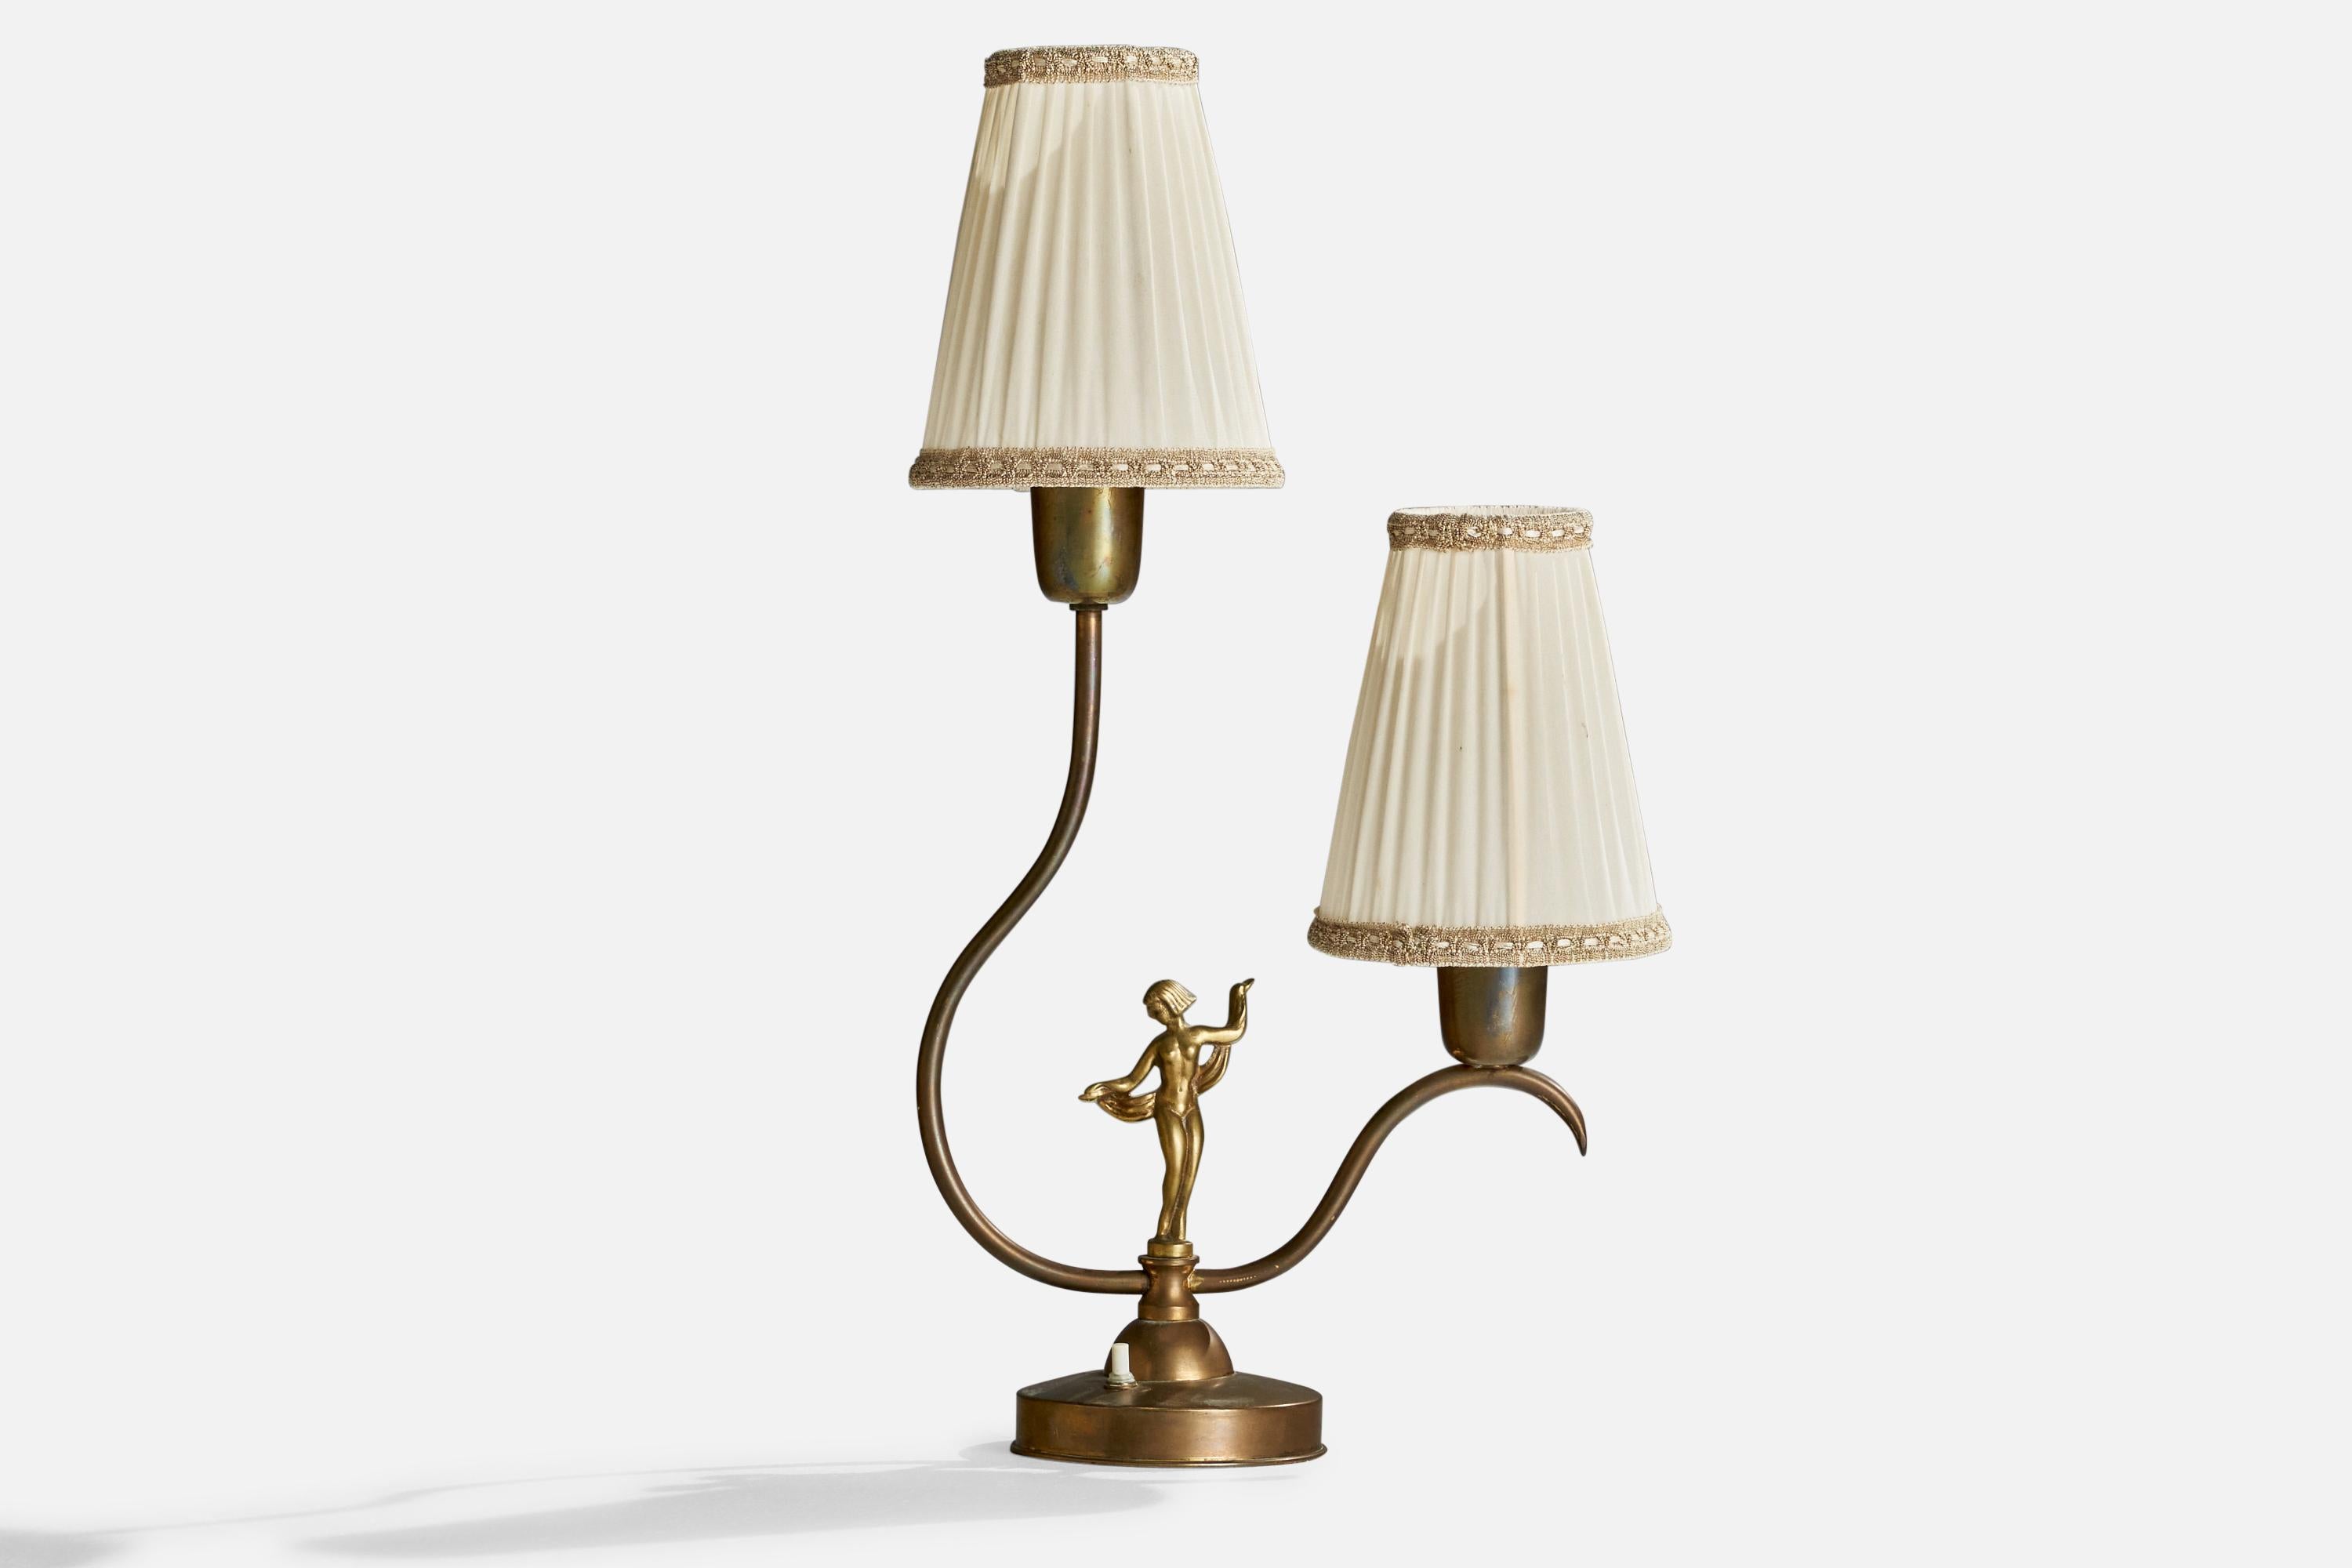 Tischlampe aus Messing und cremefarbenem Stoff, entworfen und hergestellt in Schweden, ca. 1930er Jahre.

Gesamtabmessungen (Zoll): 20,25